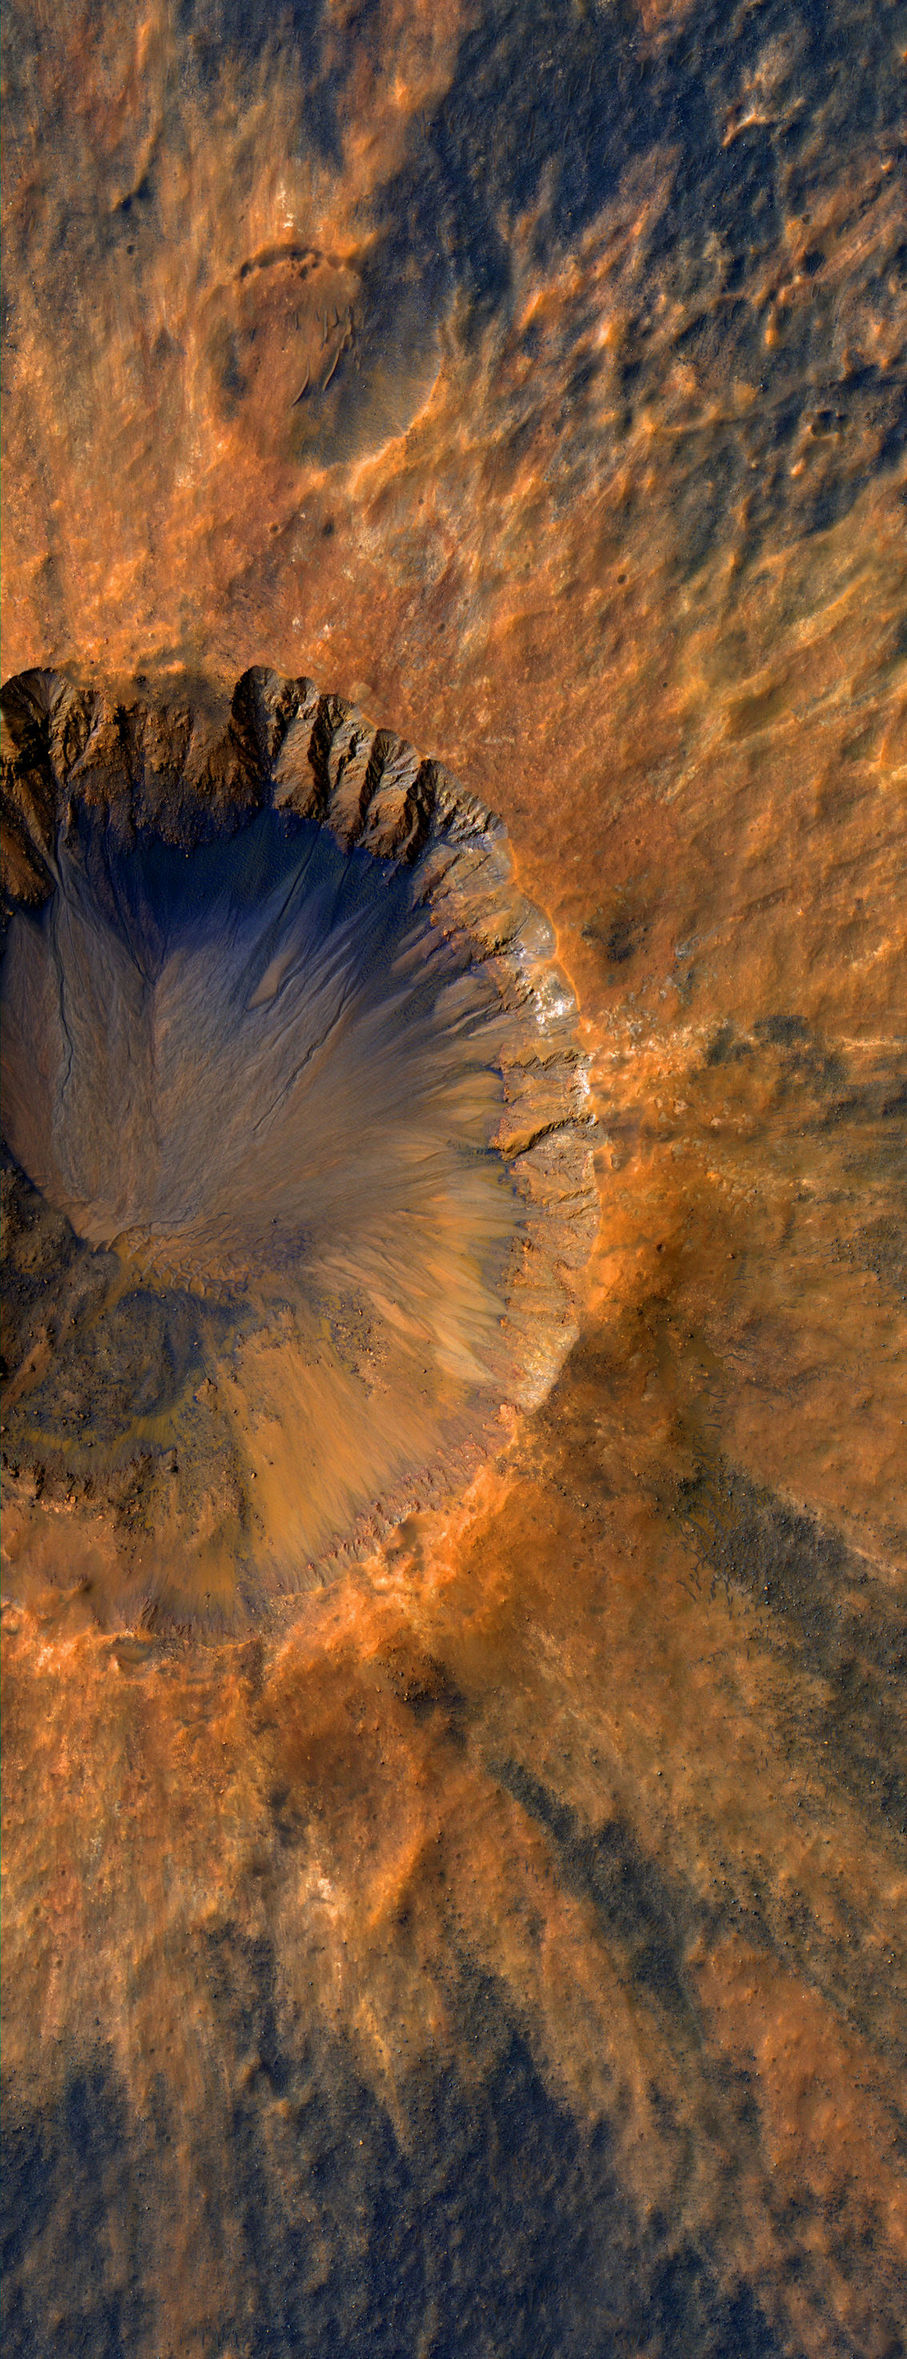 907x2359, 582 Kb / кратер, метеорит, Аризона, США